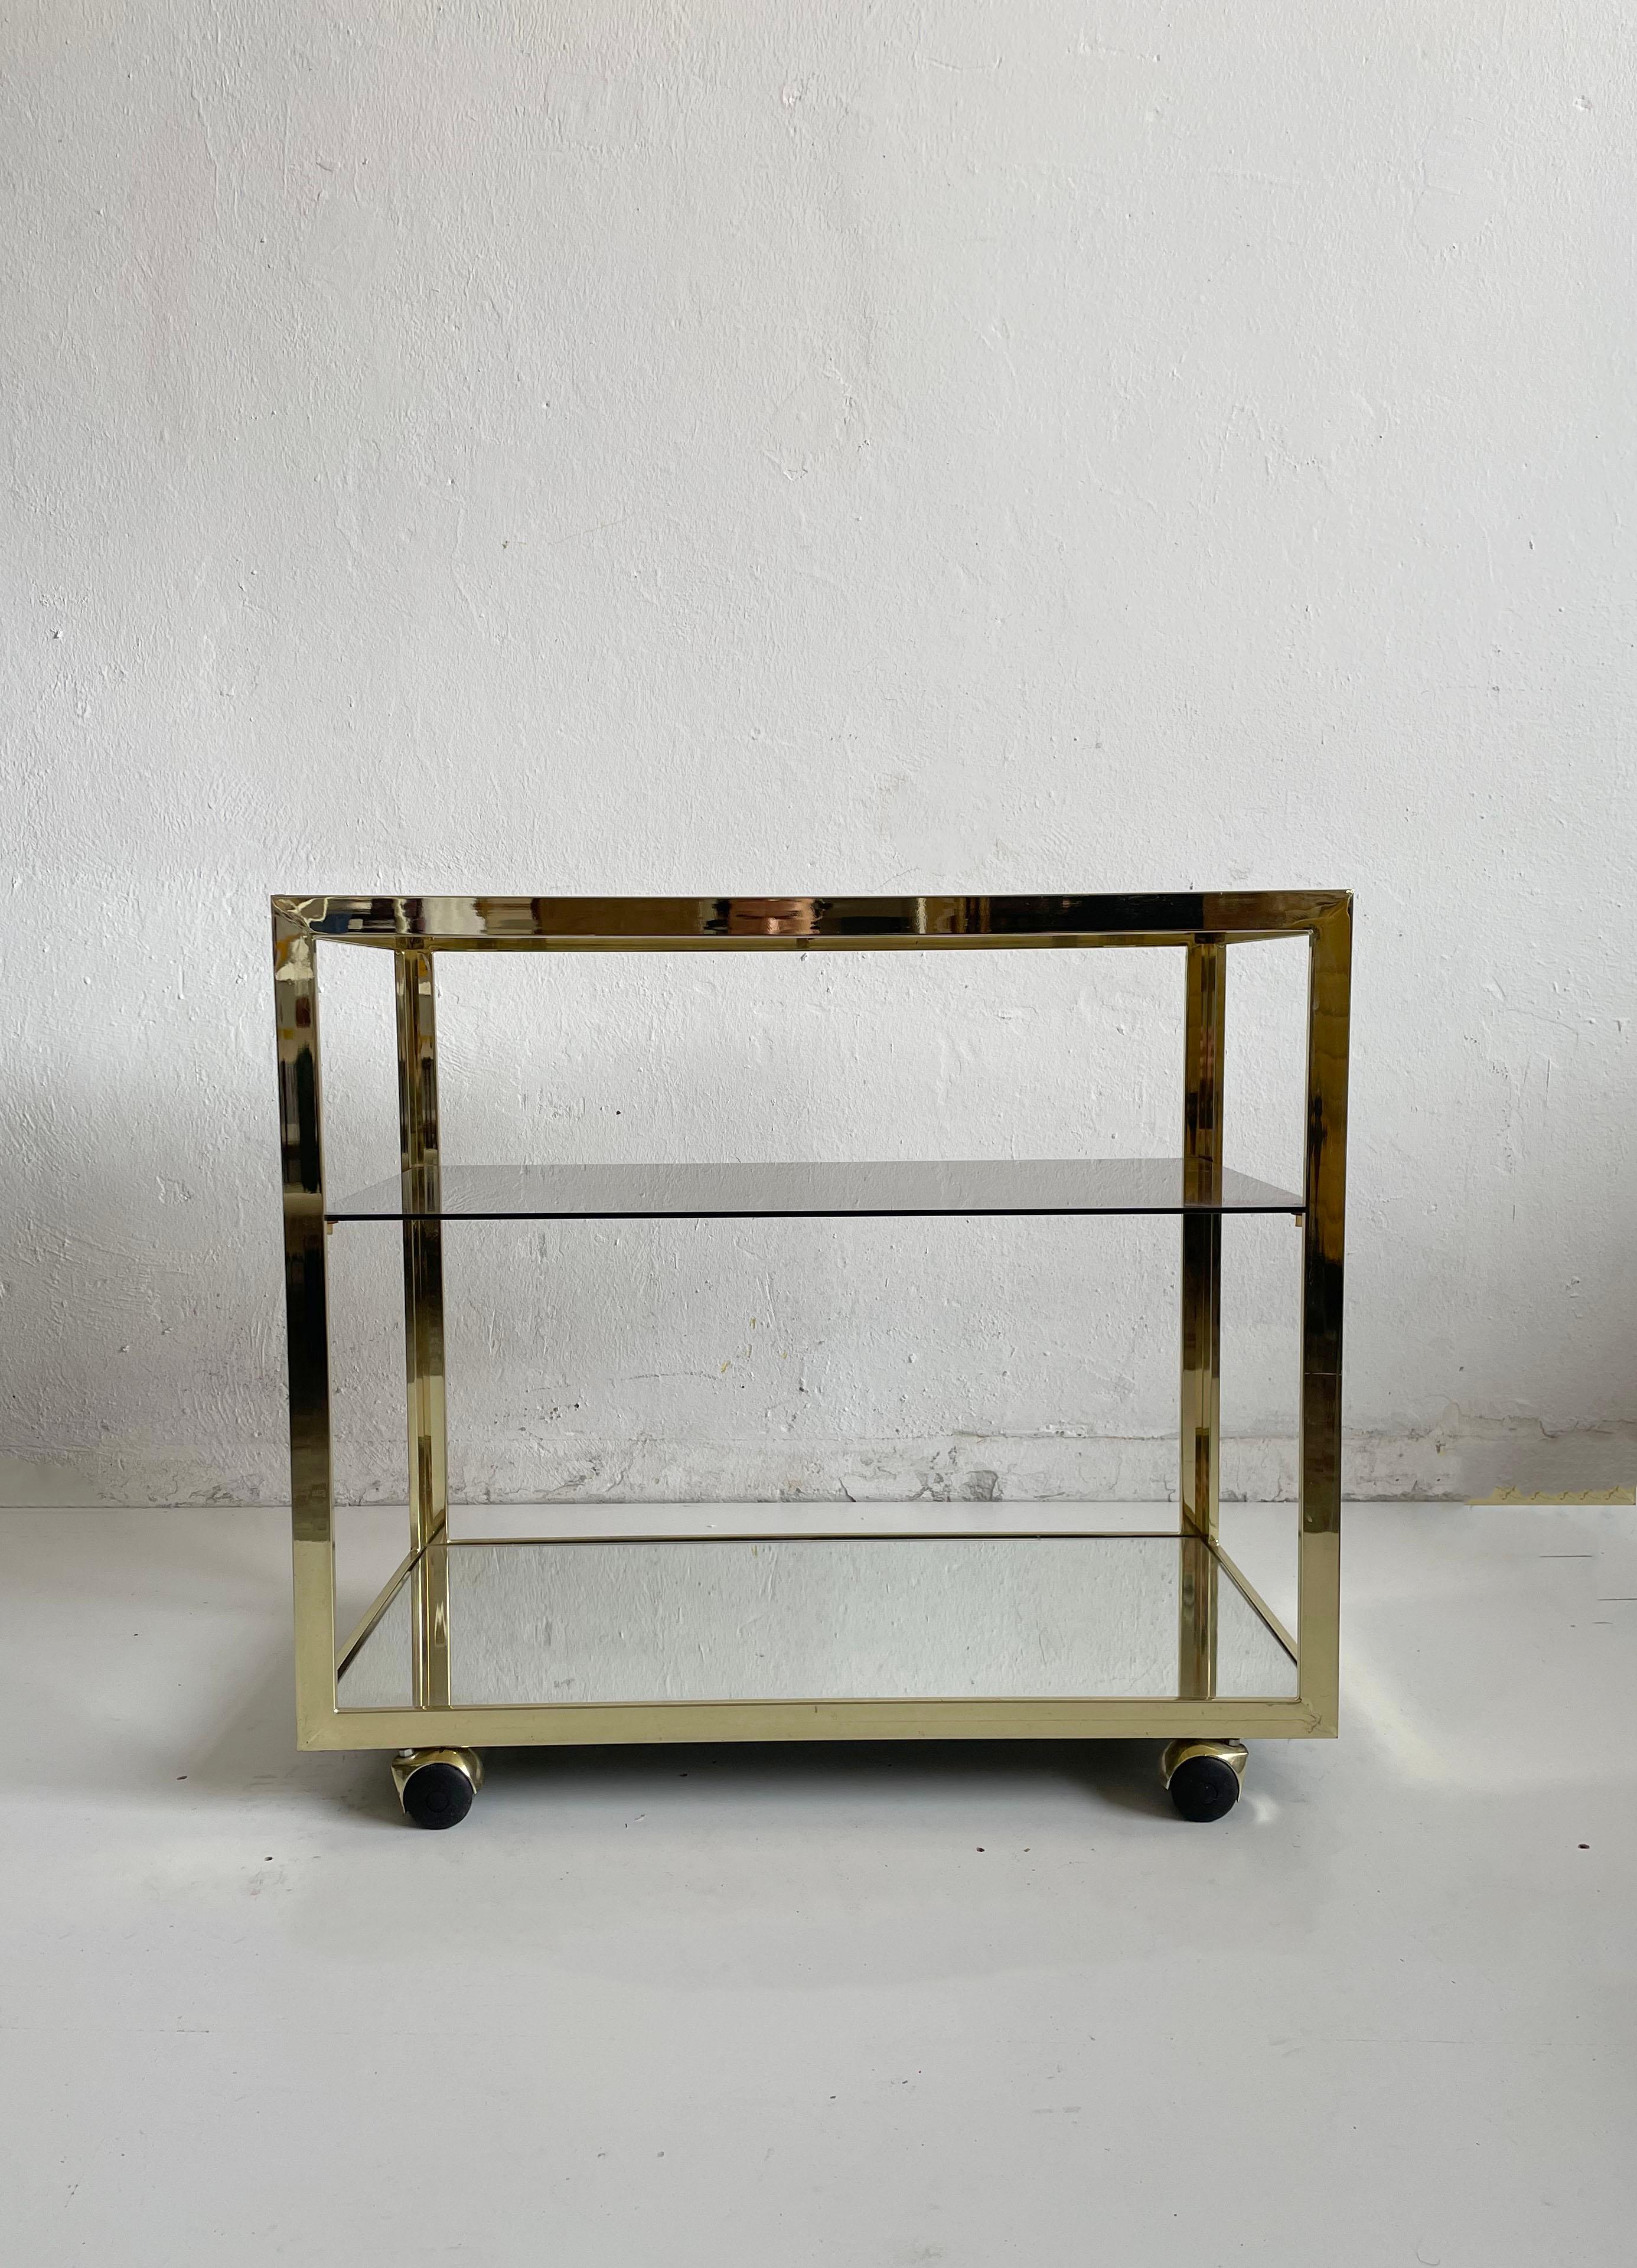 Chariot de bar minimaliste très élégant avec trois étagères en verre et cadre en métal plaqué laiton.
L'une des étagères en verre est en verre miroir, les deux autres sont en verre teinté.

La structure est très solide, le verre sans dommage,